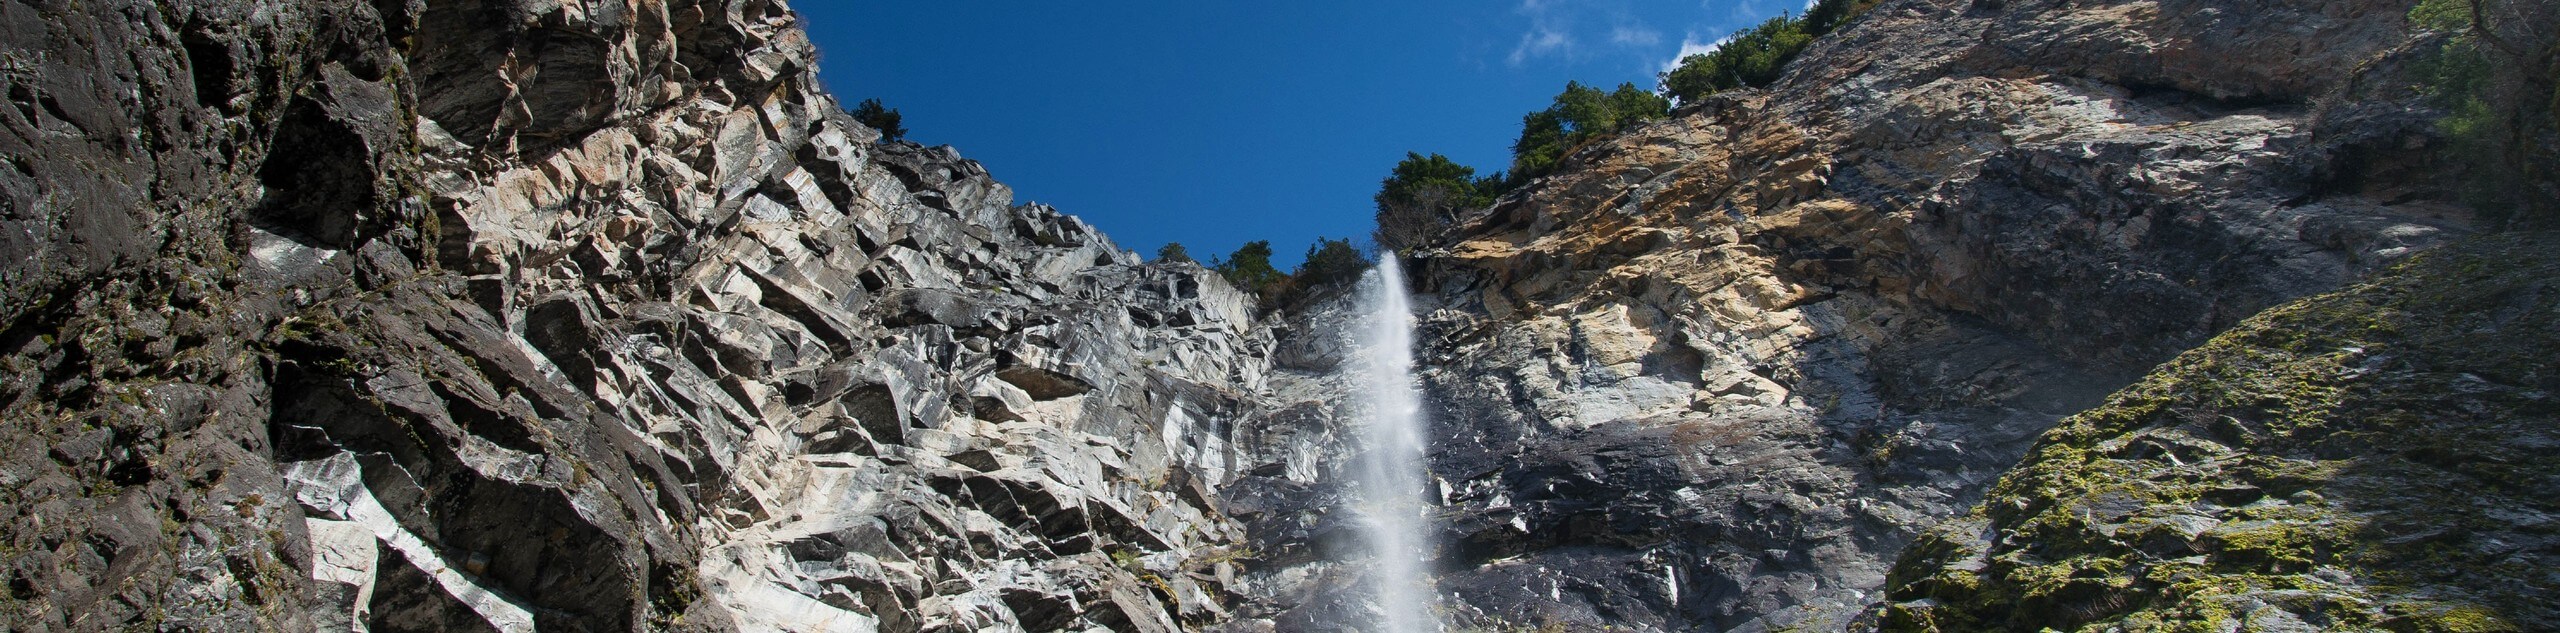 Snoquera Falls Loop Trail